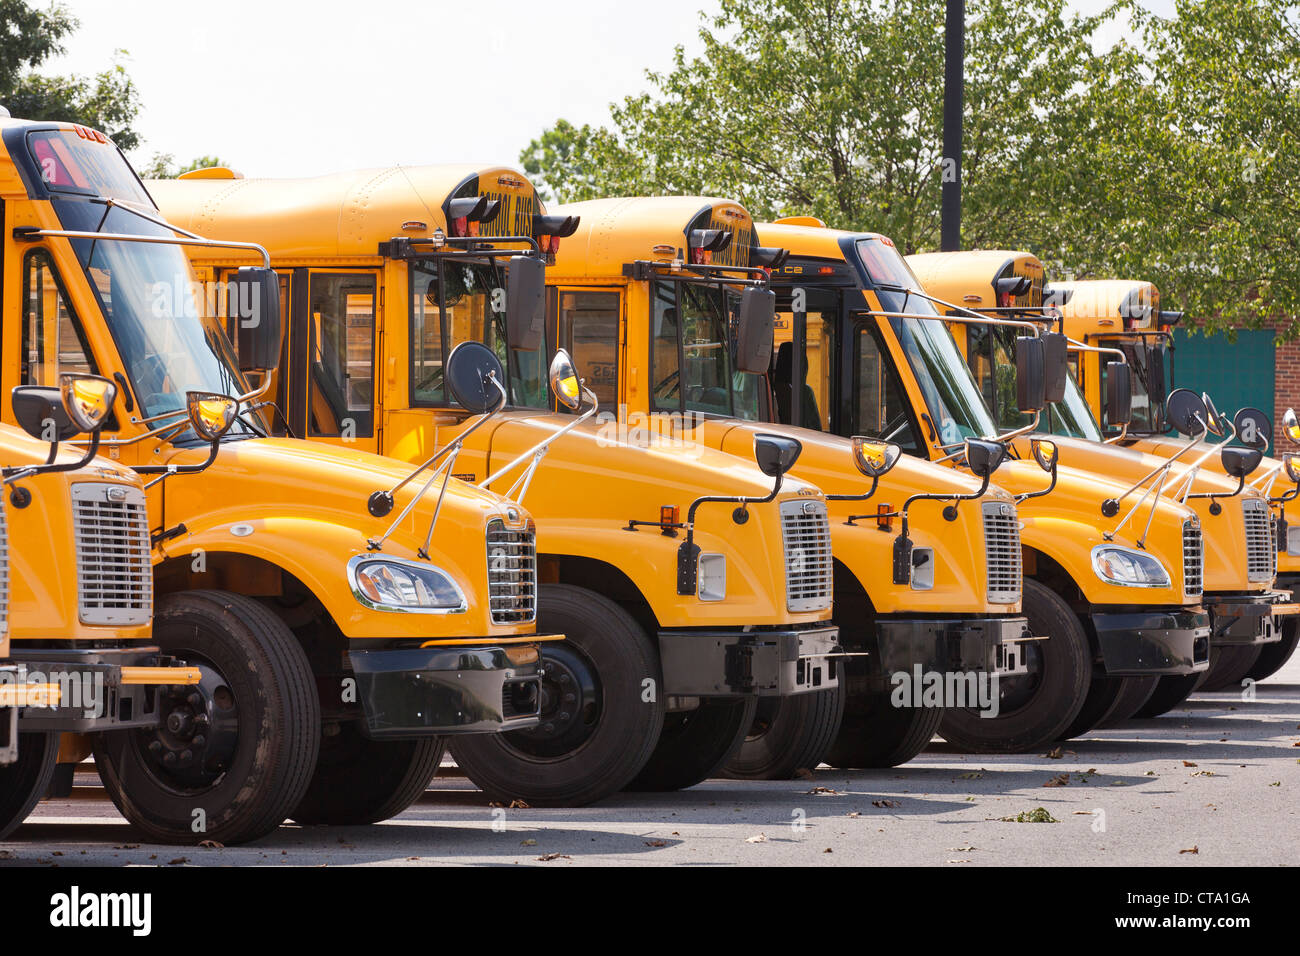 Autobuses escolares estacionados Foto de stock